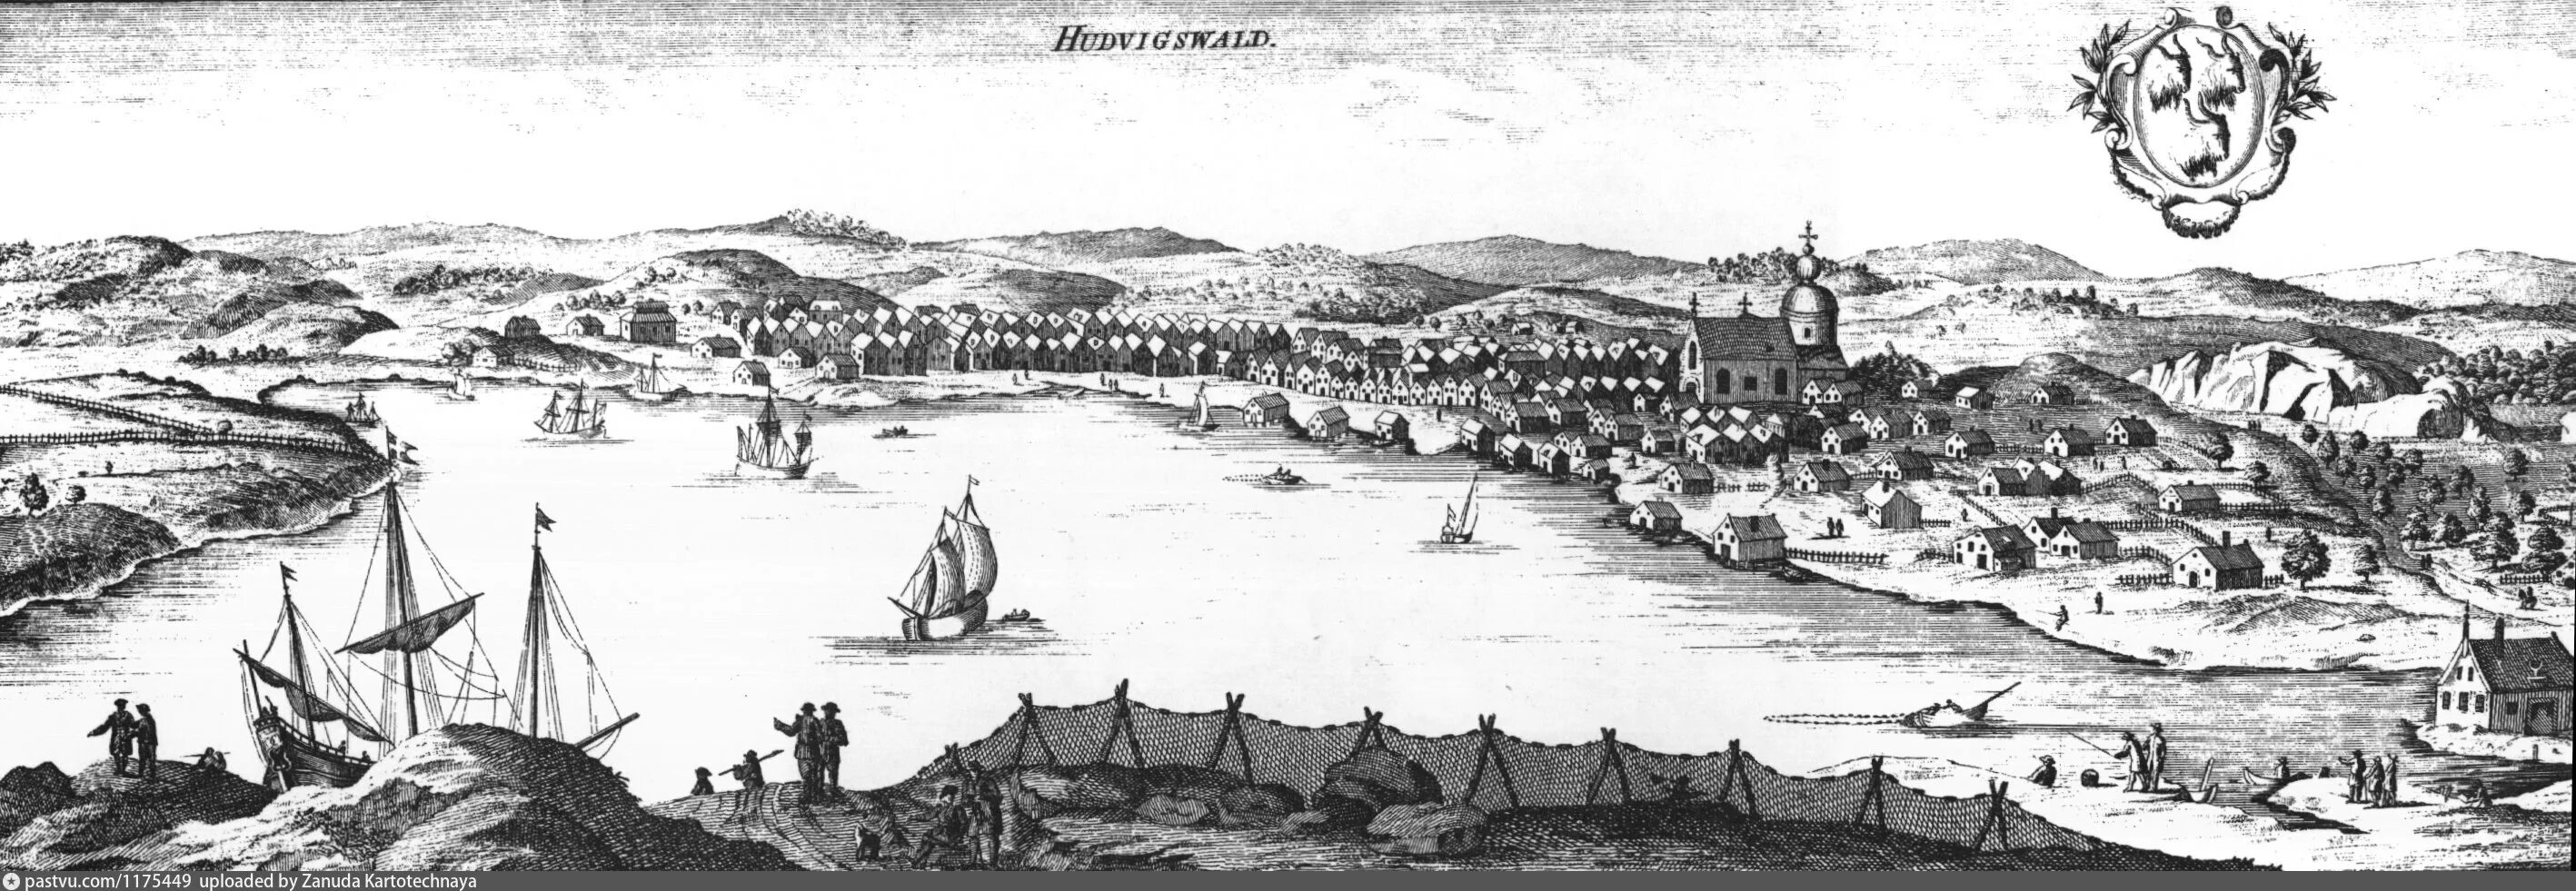 1700 р. Иггесунд город. Швеция картинки для детей.